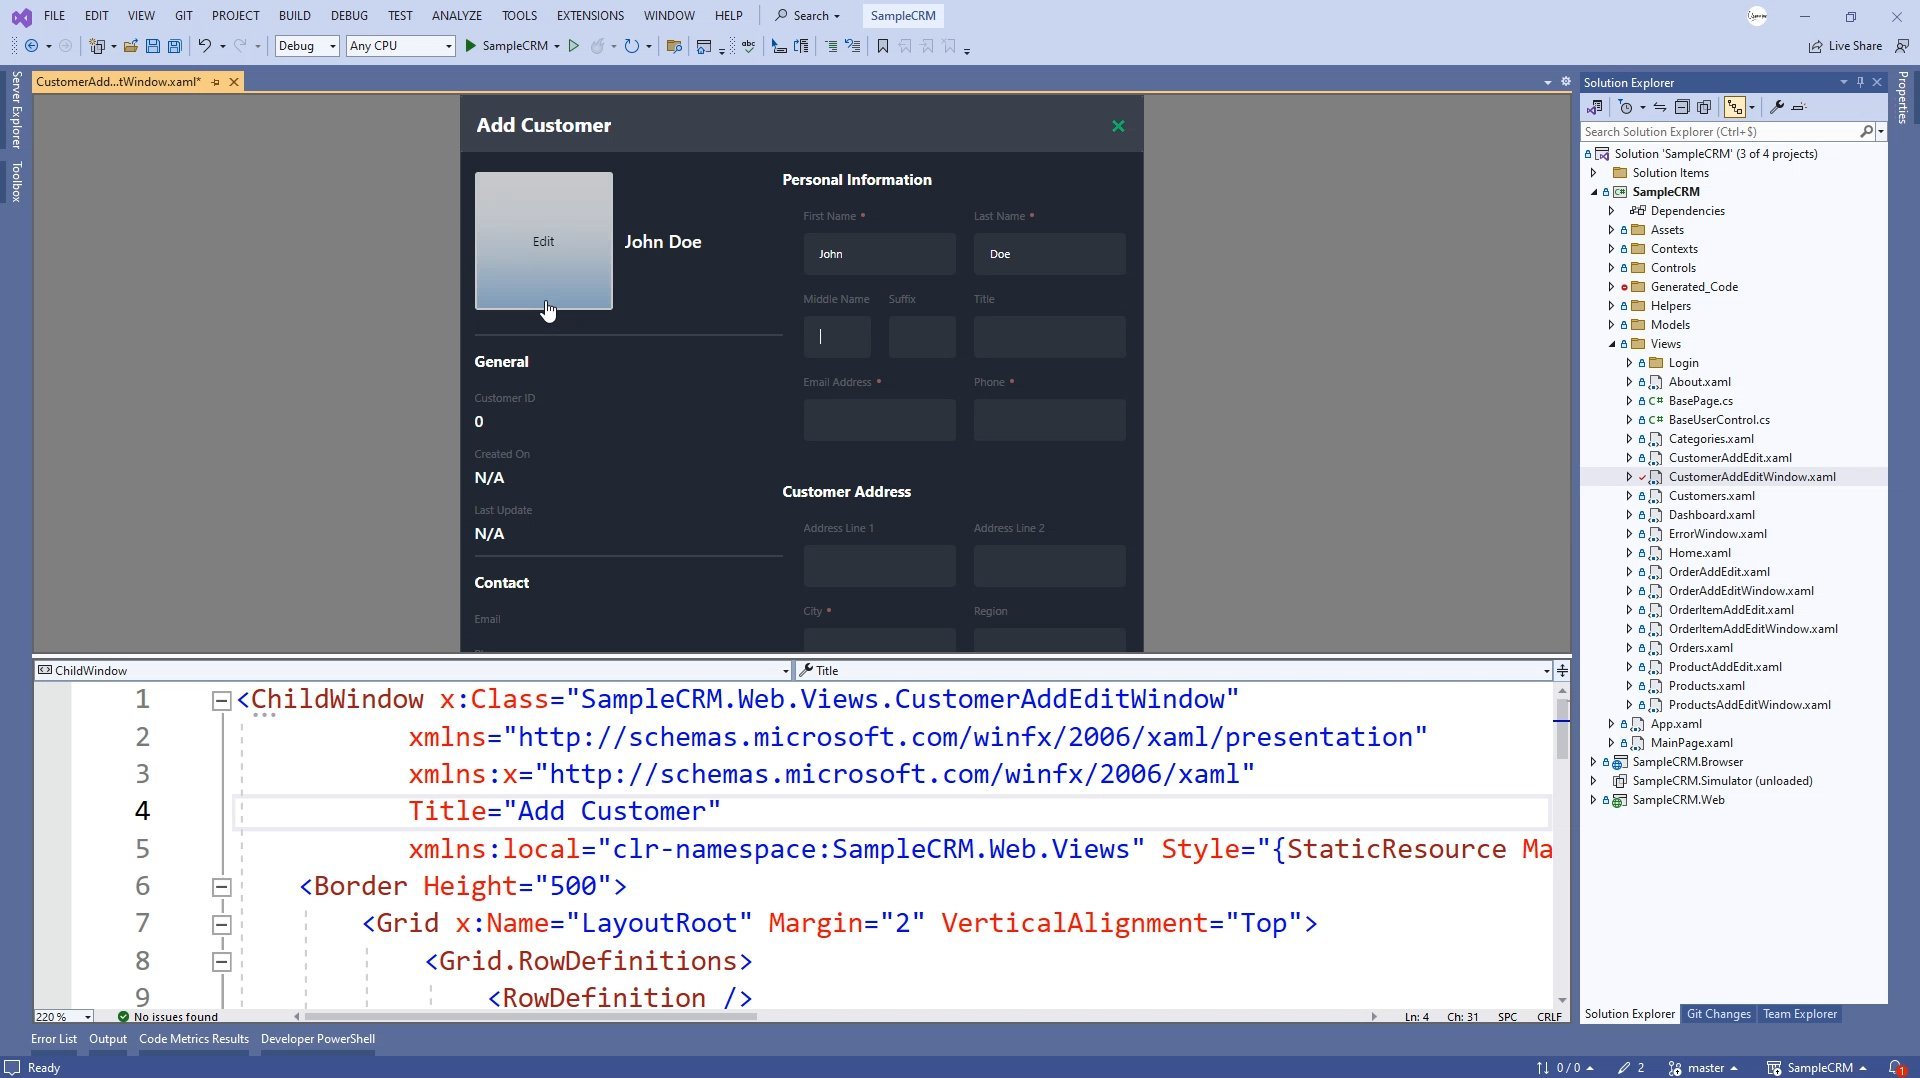 OpenSilver 2.0 Live XAML Preview in Visual Studio Designer